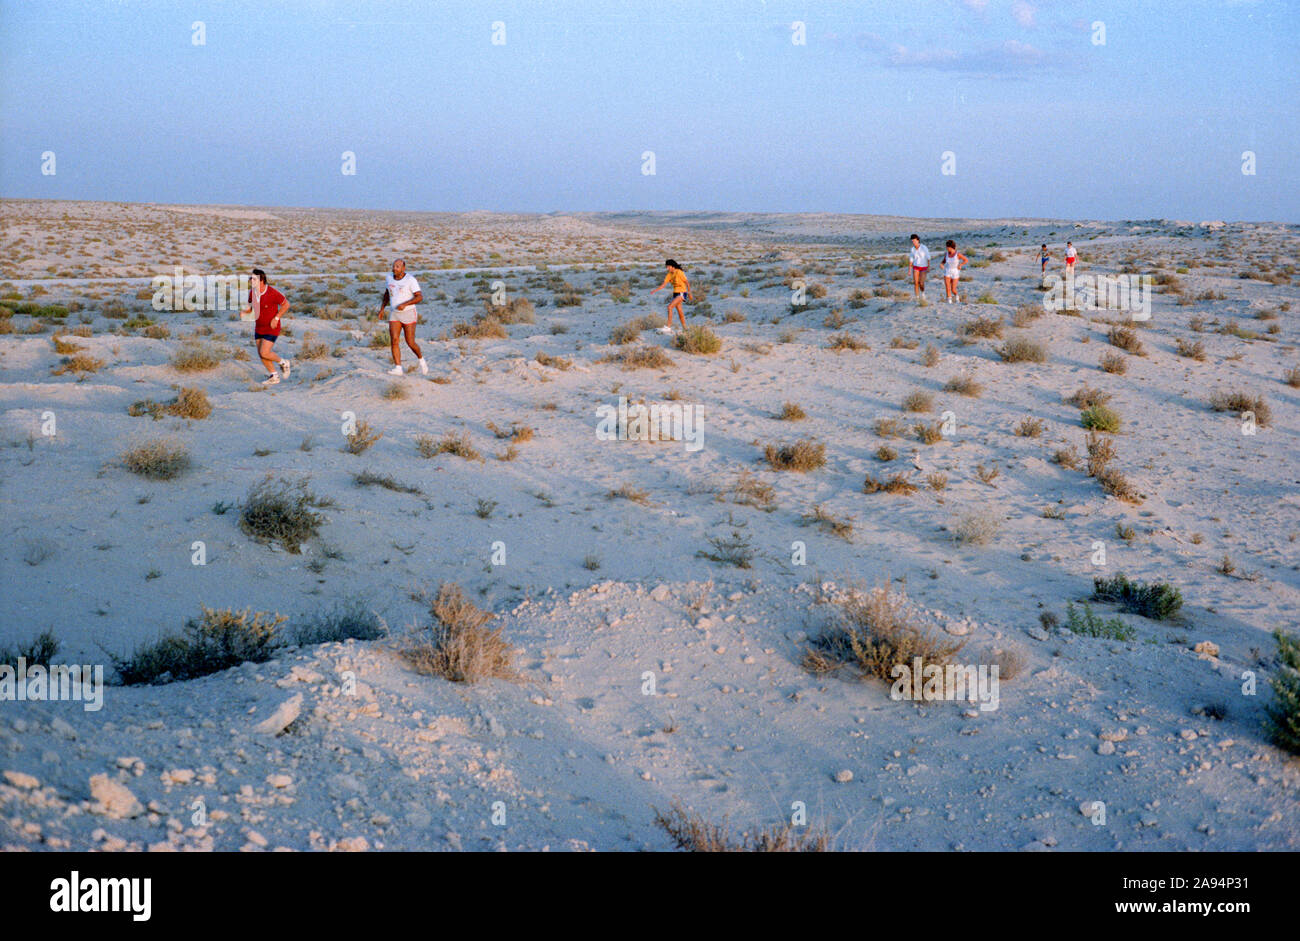 Un incontro serale della terraferma Hash House Harriers, un espatriato gruppo sociale, nel deserto al di fuori della città di Abu Dhabi, Emirati arabi uniti, 1984-85 Foto Stock